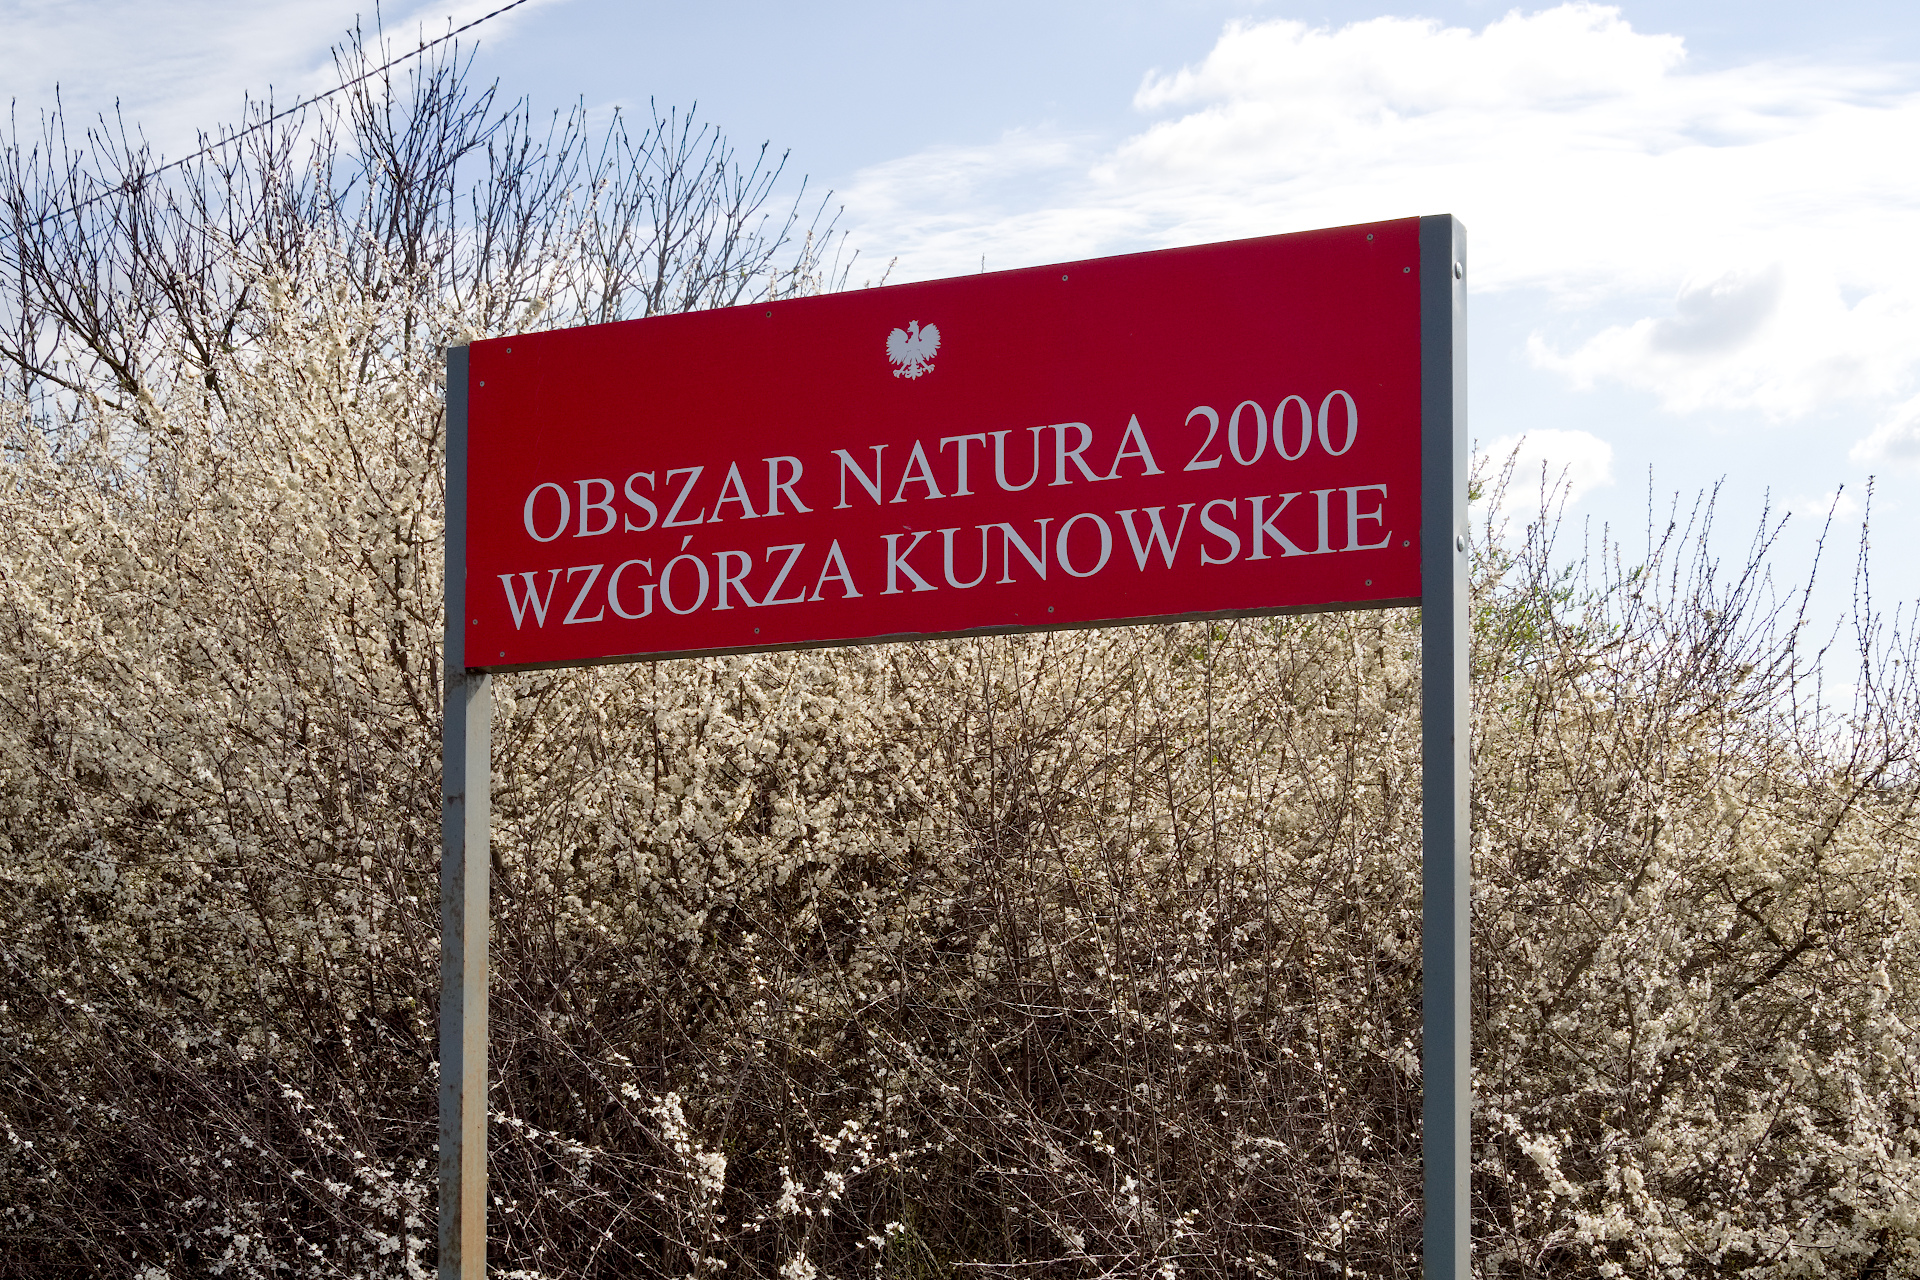 Na tle kwitnącej tarniny, czerwona tablica z białym napisem "Obszar Natura 2000 - Wzgórza Kunowskie".